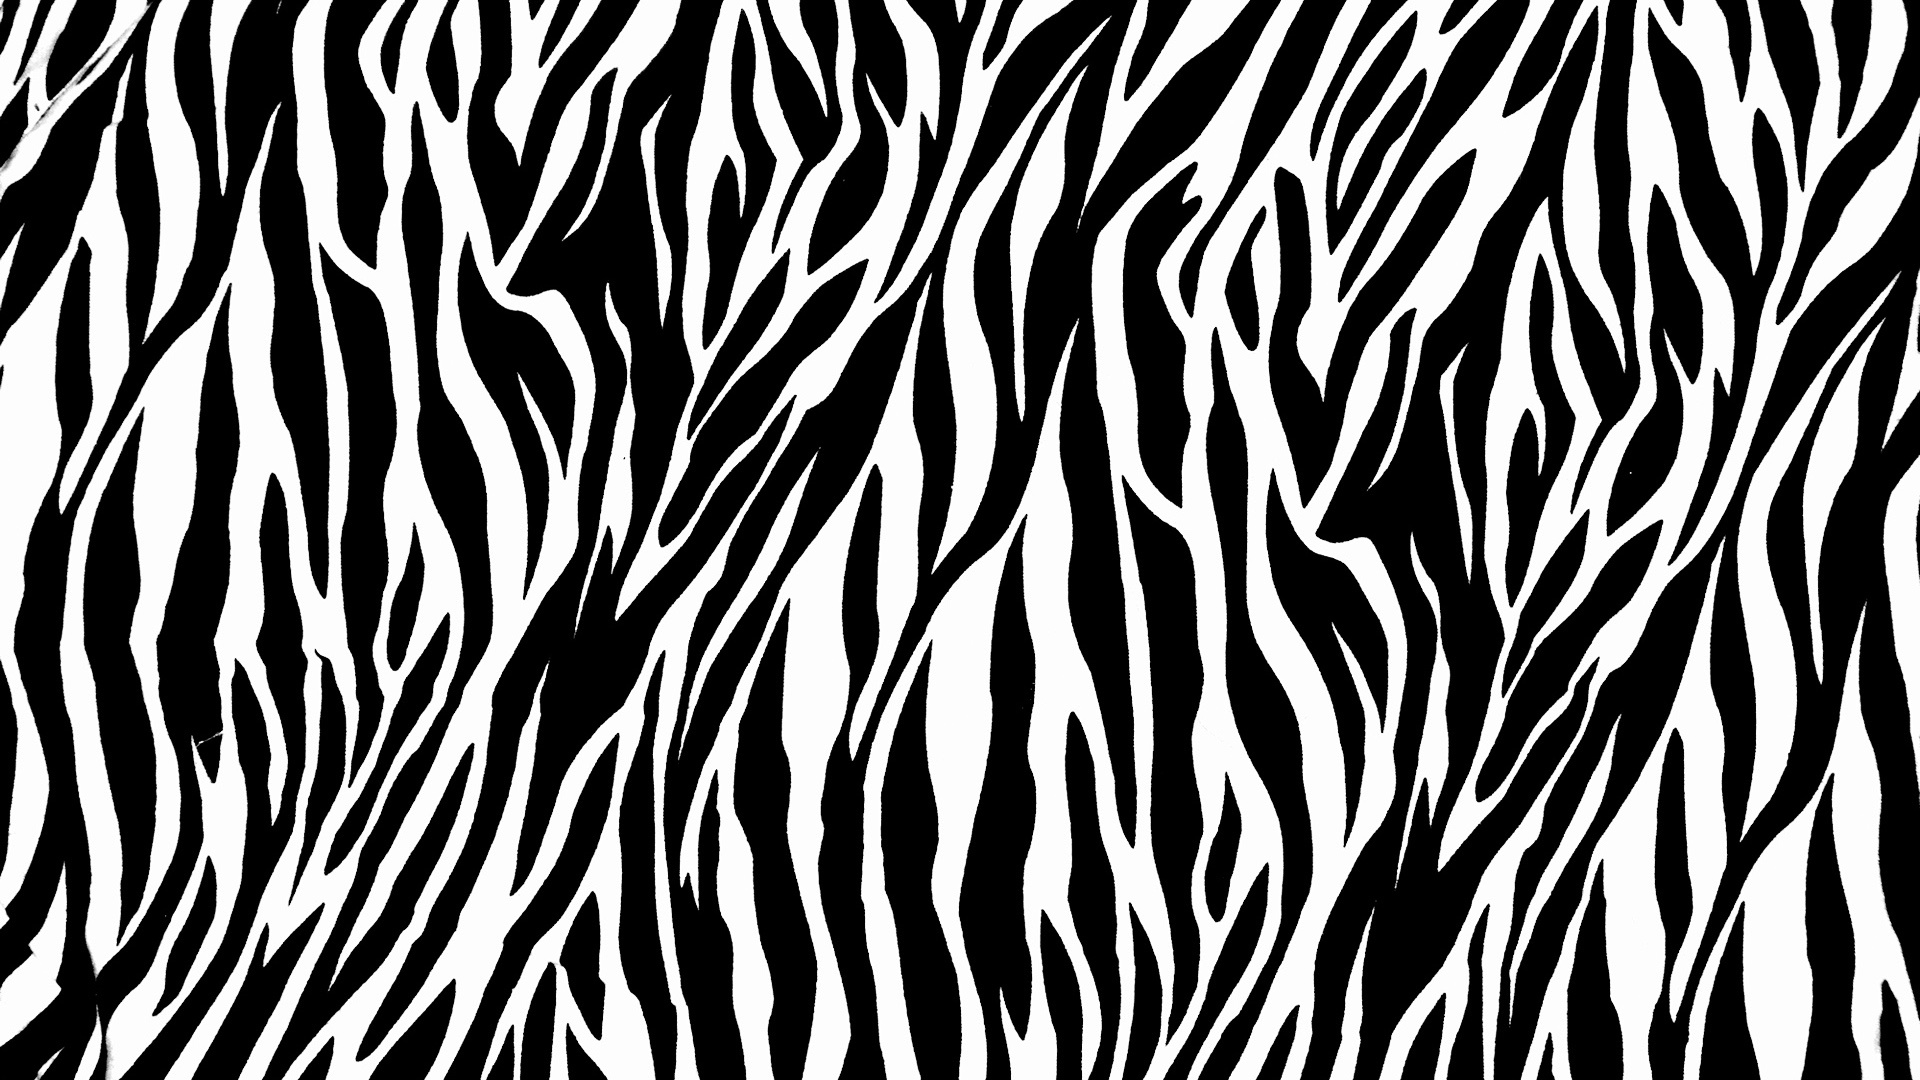 Zebra Print - 1920x1080 - 600437